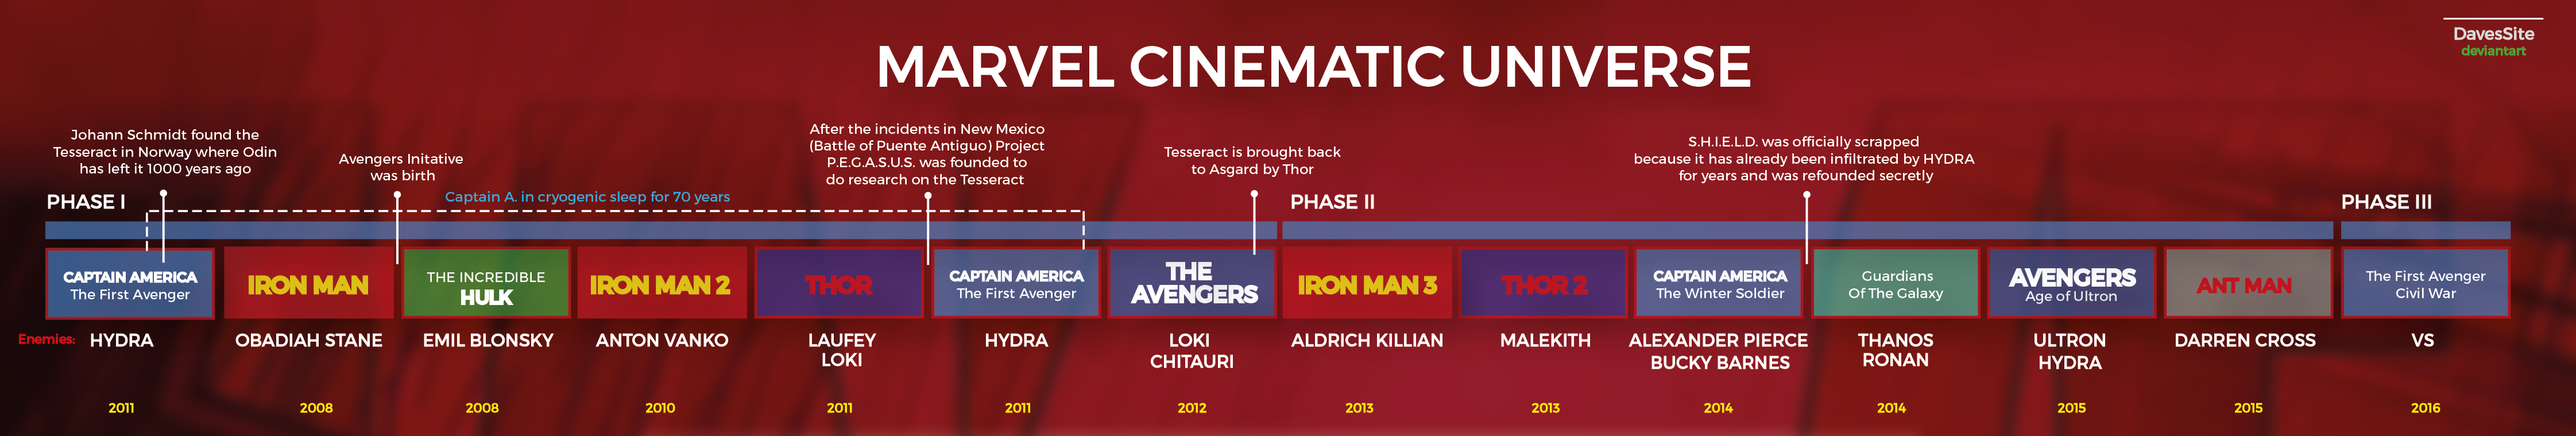 Marvel Cinematic Universe Timeline Television Timeline Marvel Universe